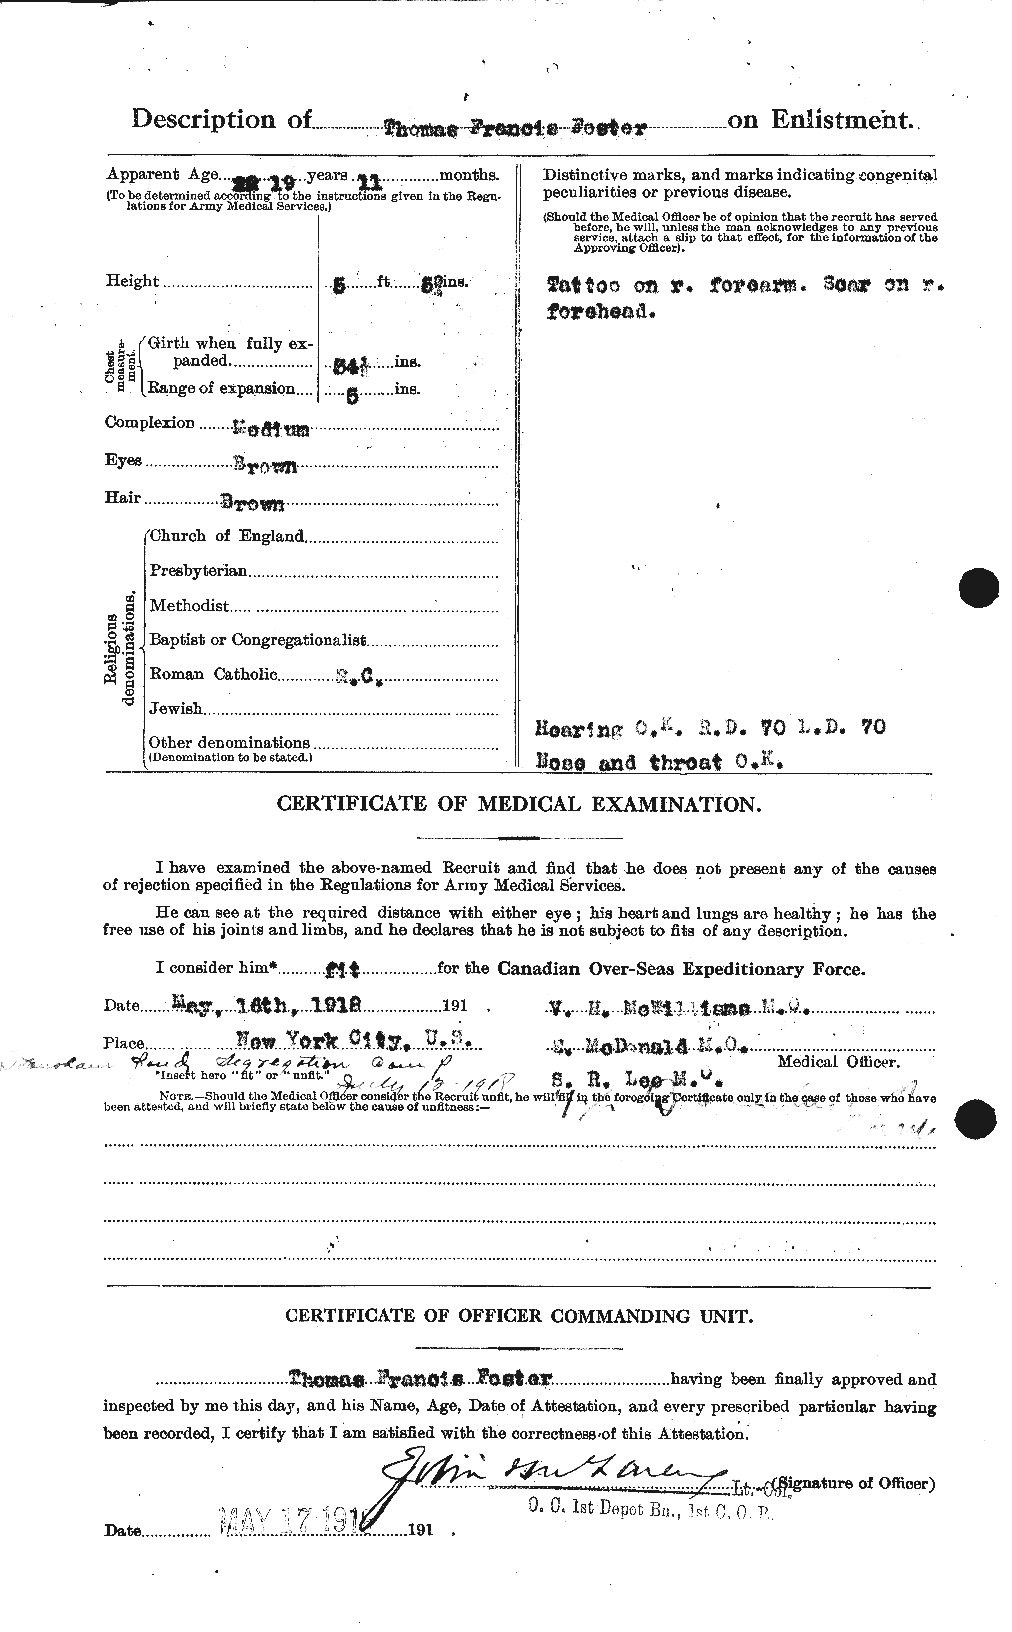 Dossiers du Personnel de la Première Guerre mondiale - CEC 335231b